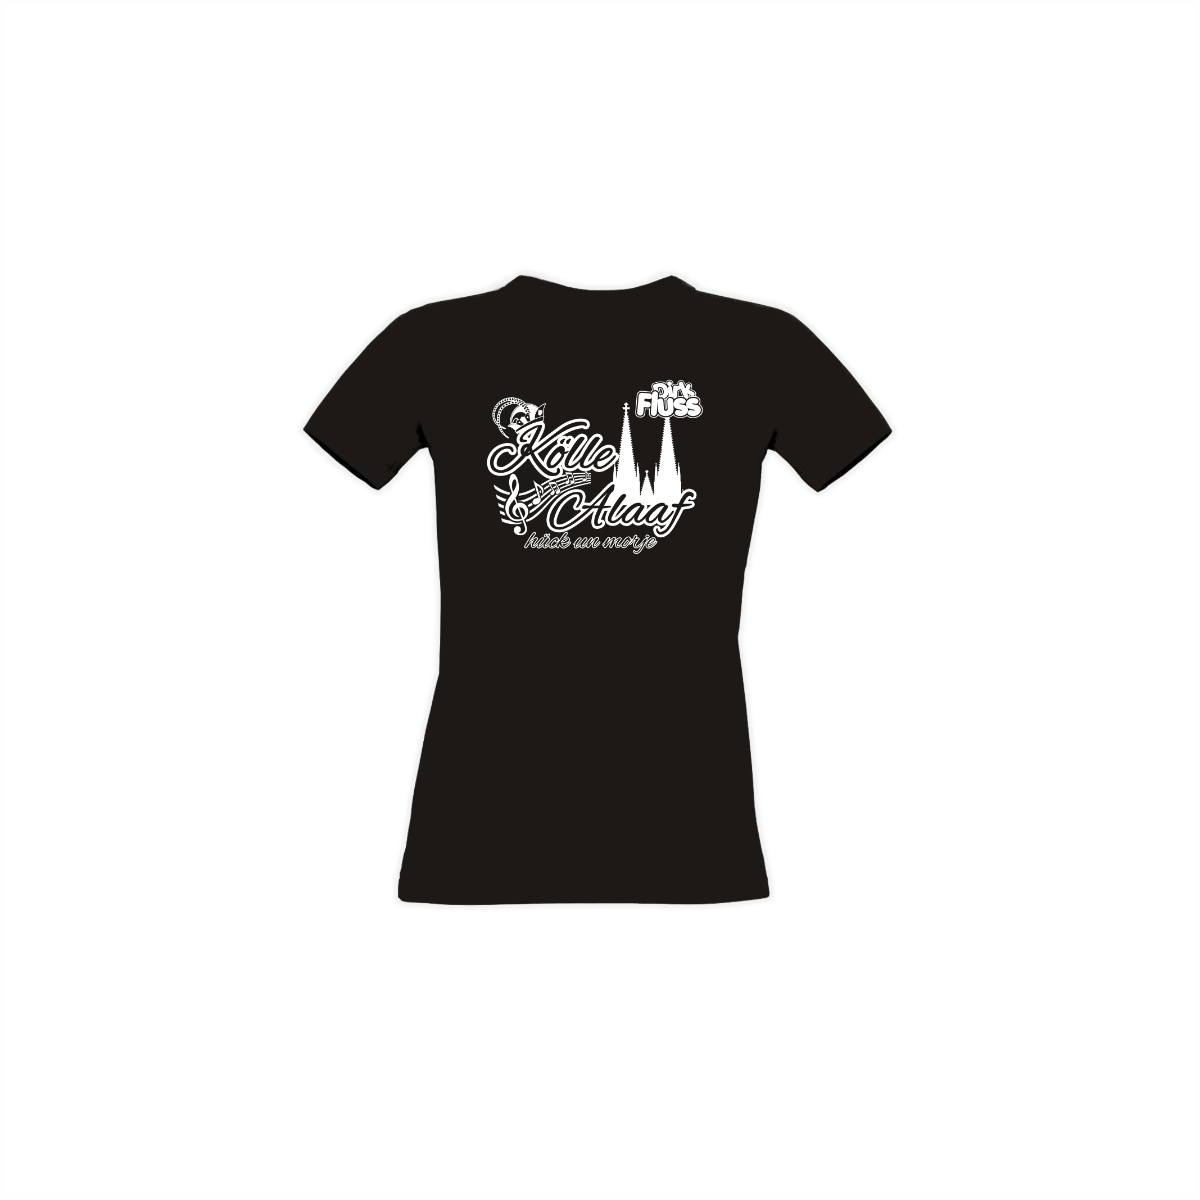 Girly-Shirt "KÖLLE ALAAF" schwarz